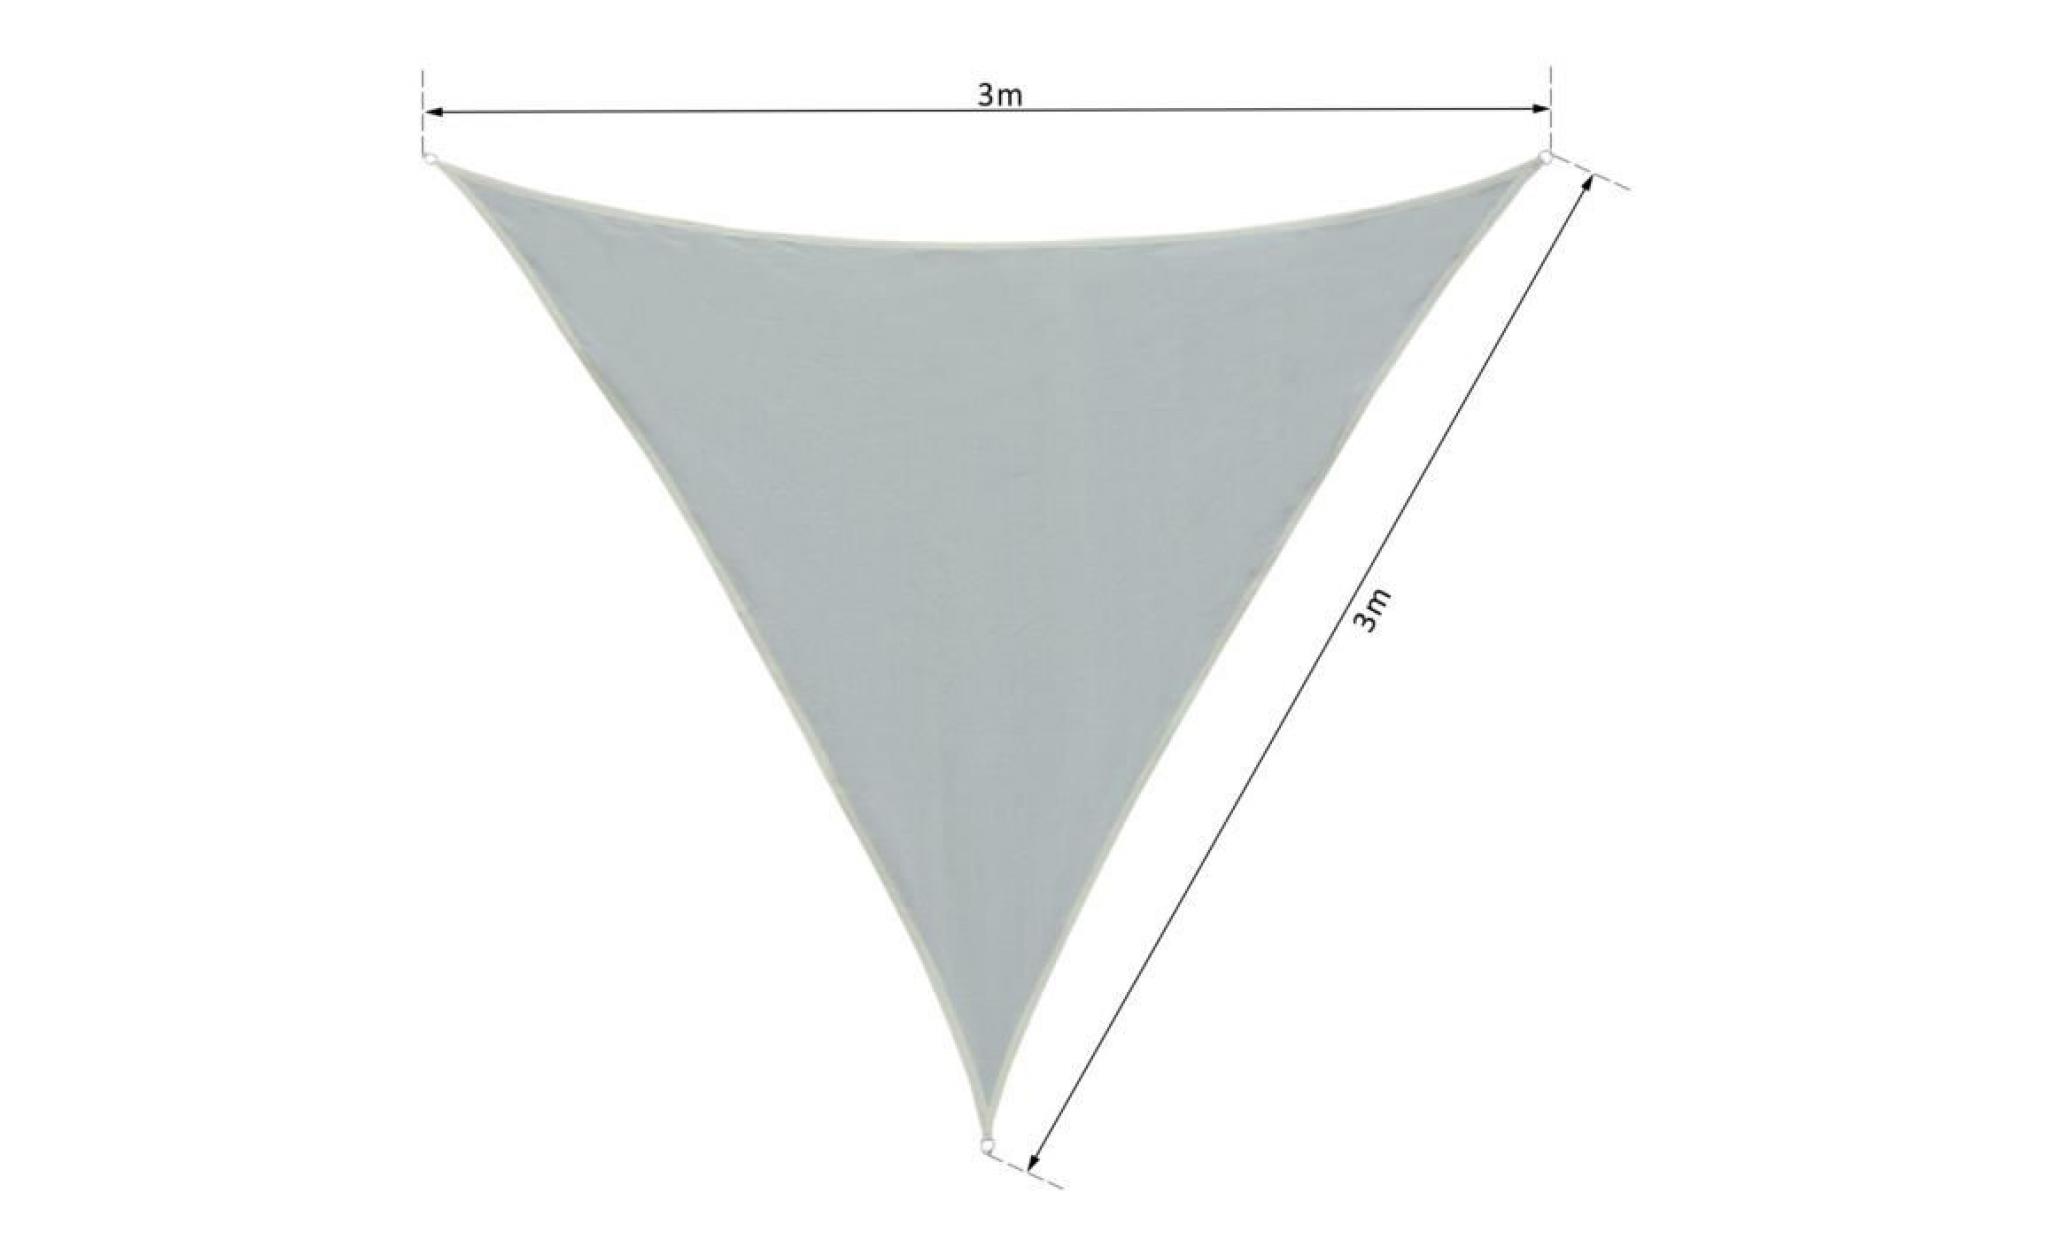 voile d'ombrage triangulaire grande taille 3 x 3 x 3 m polyester imperméabilisé haute densité 160 g/m² gris clair 300x300x1cm gris pas cher